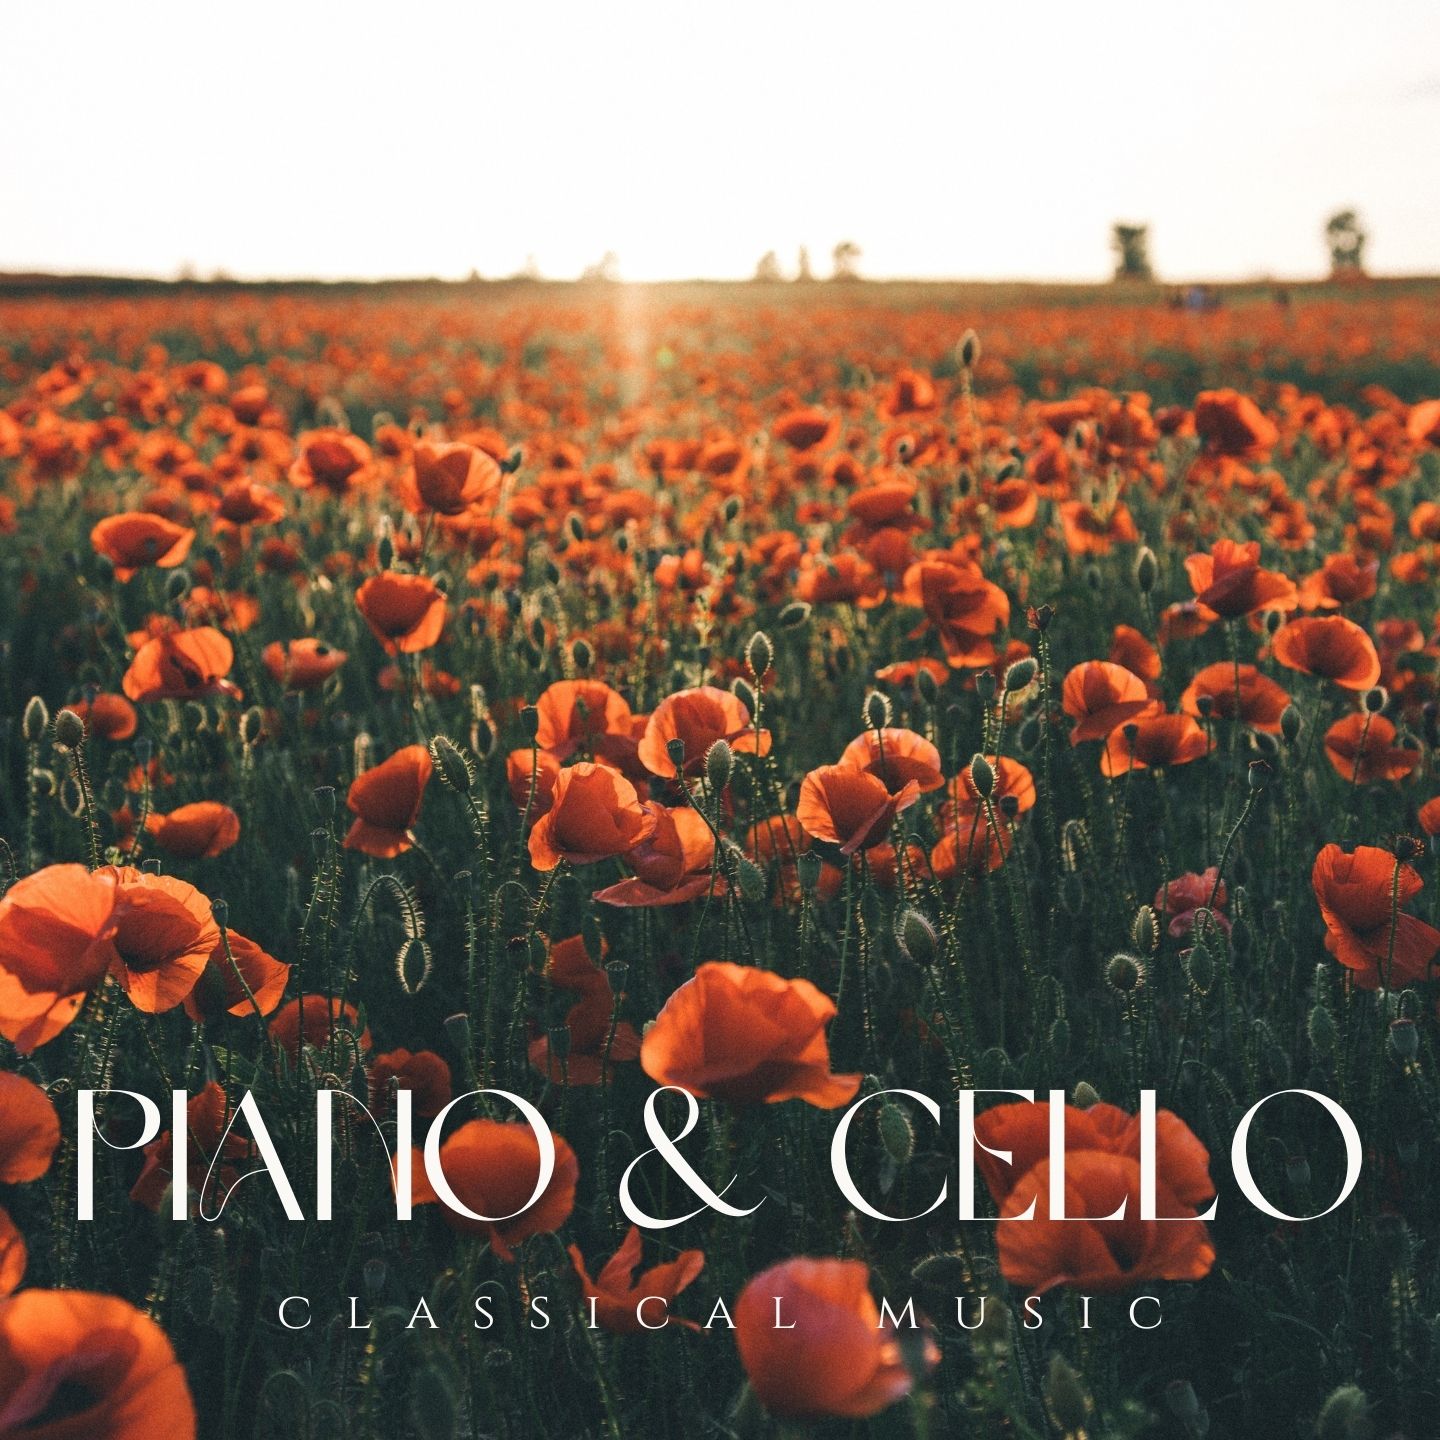 Piano & Cello – Classical Music